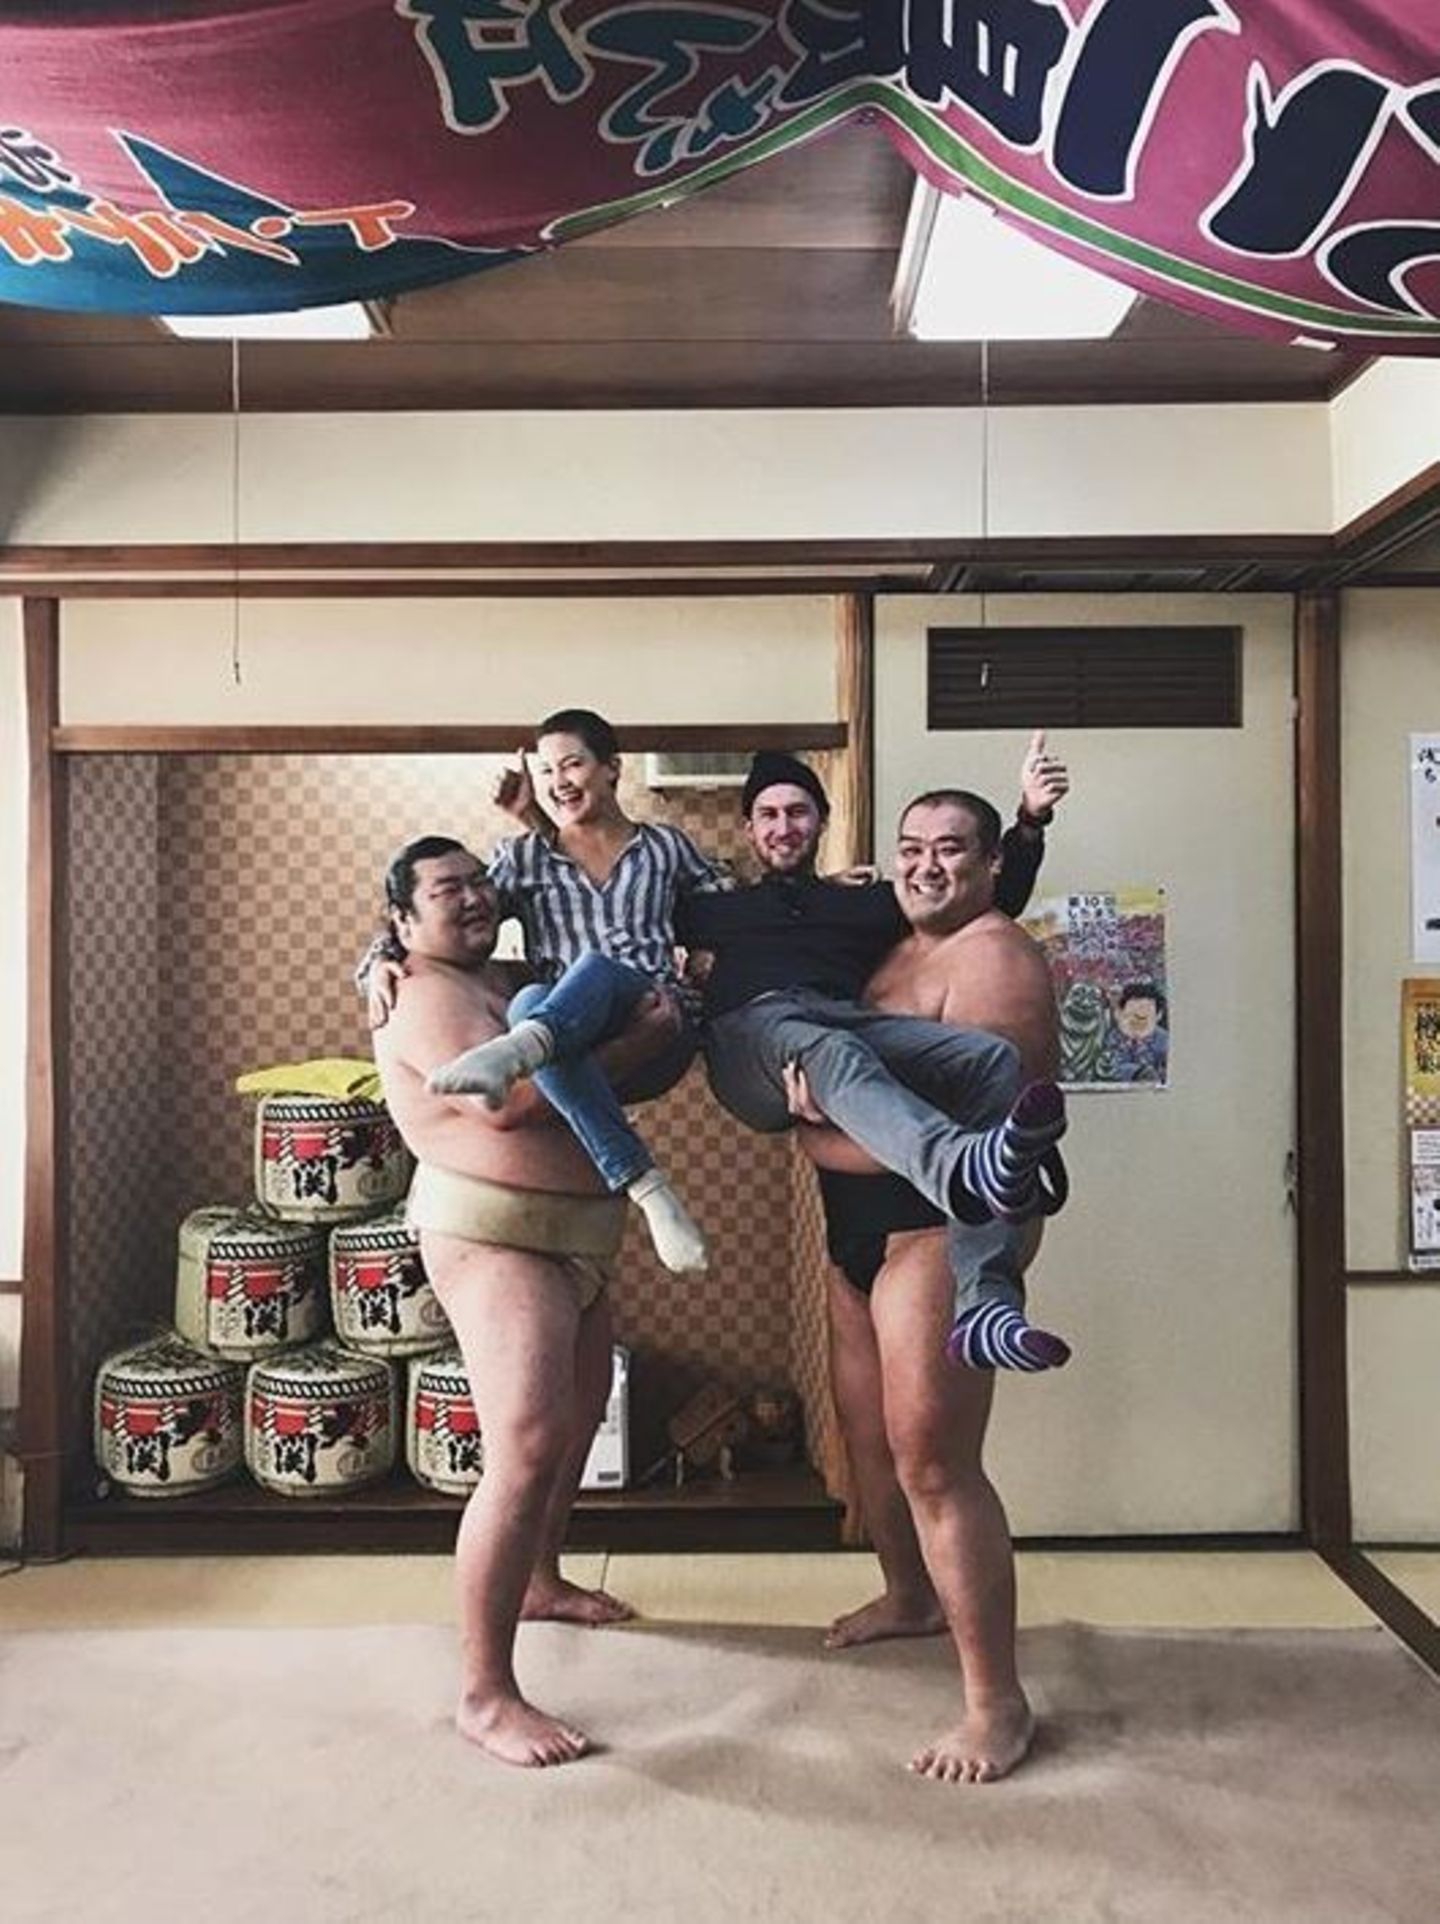 12. November 2017   Hollywoodstar Kate Hudson und ihr Freund Danny Fujikawa amüsieren sich in Japan: Auf dem Foto zeigen sie sich in den Armen zweier bärenstarker Sumoringer. Die prominenten Urlauber wirken wie Kinder, verglichen mit den Kampfsportlern.